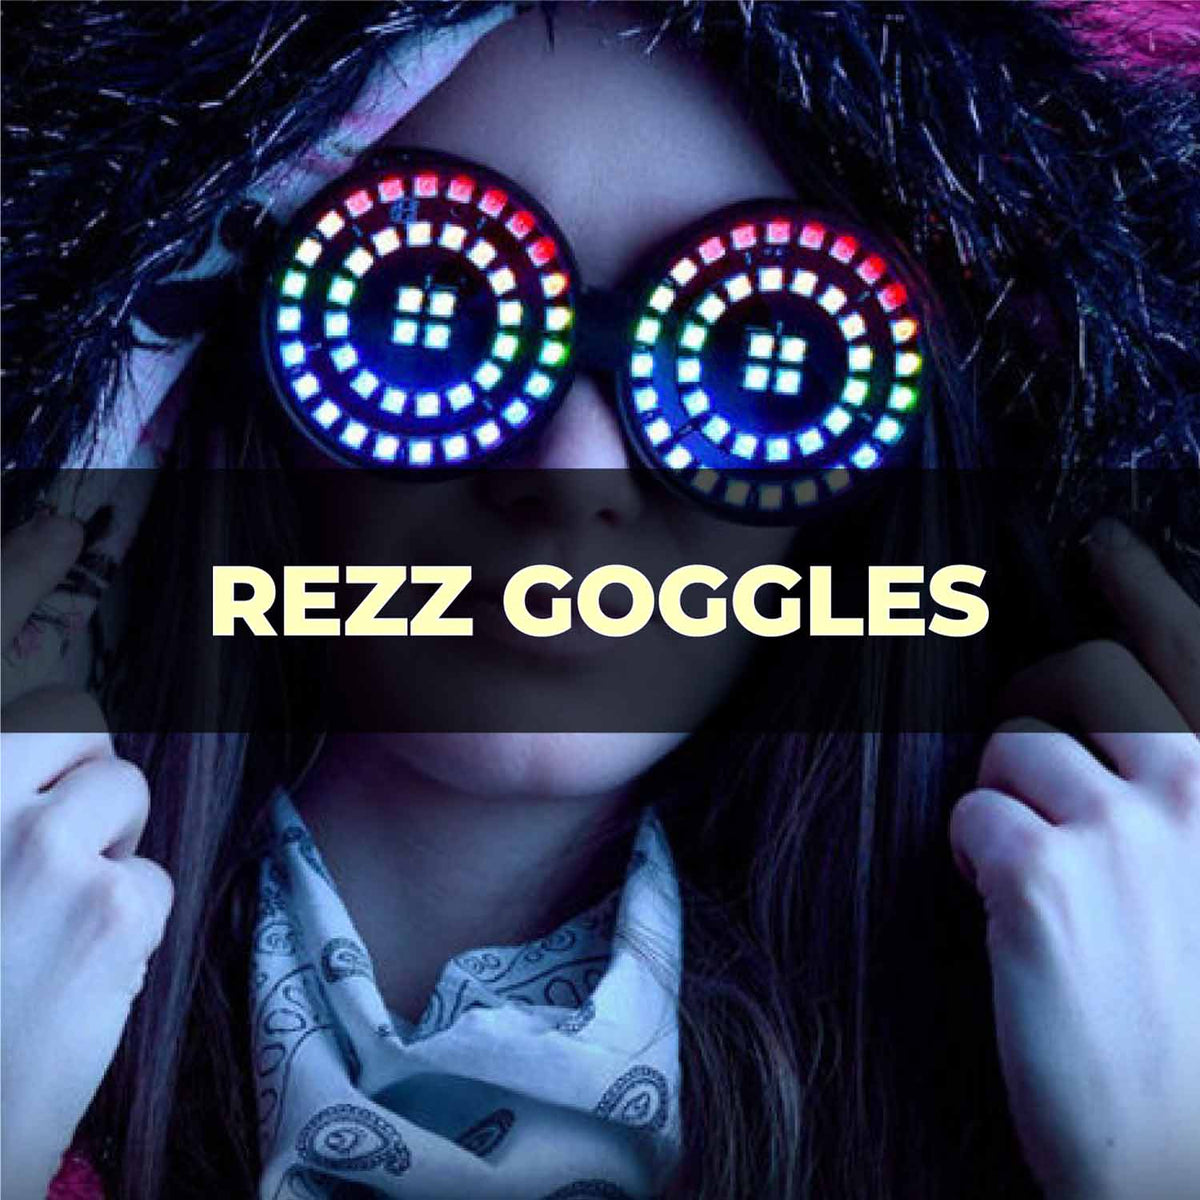 REZZ LED GLASSES/ REZZ GOGGLES FOR RAVE FESTIVALS - Rave Jersey